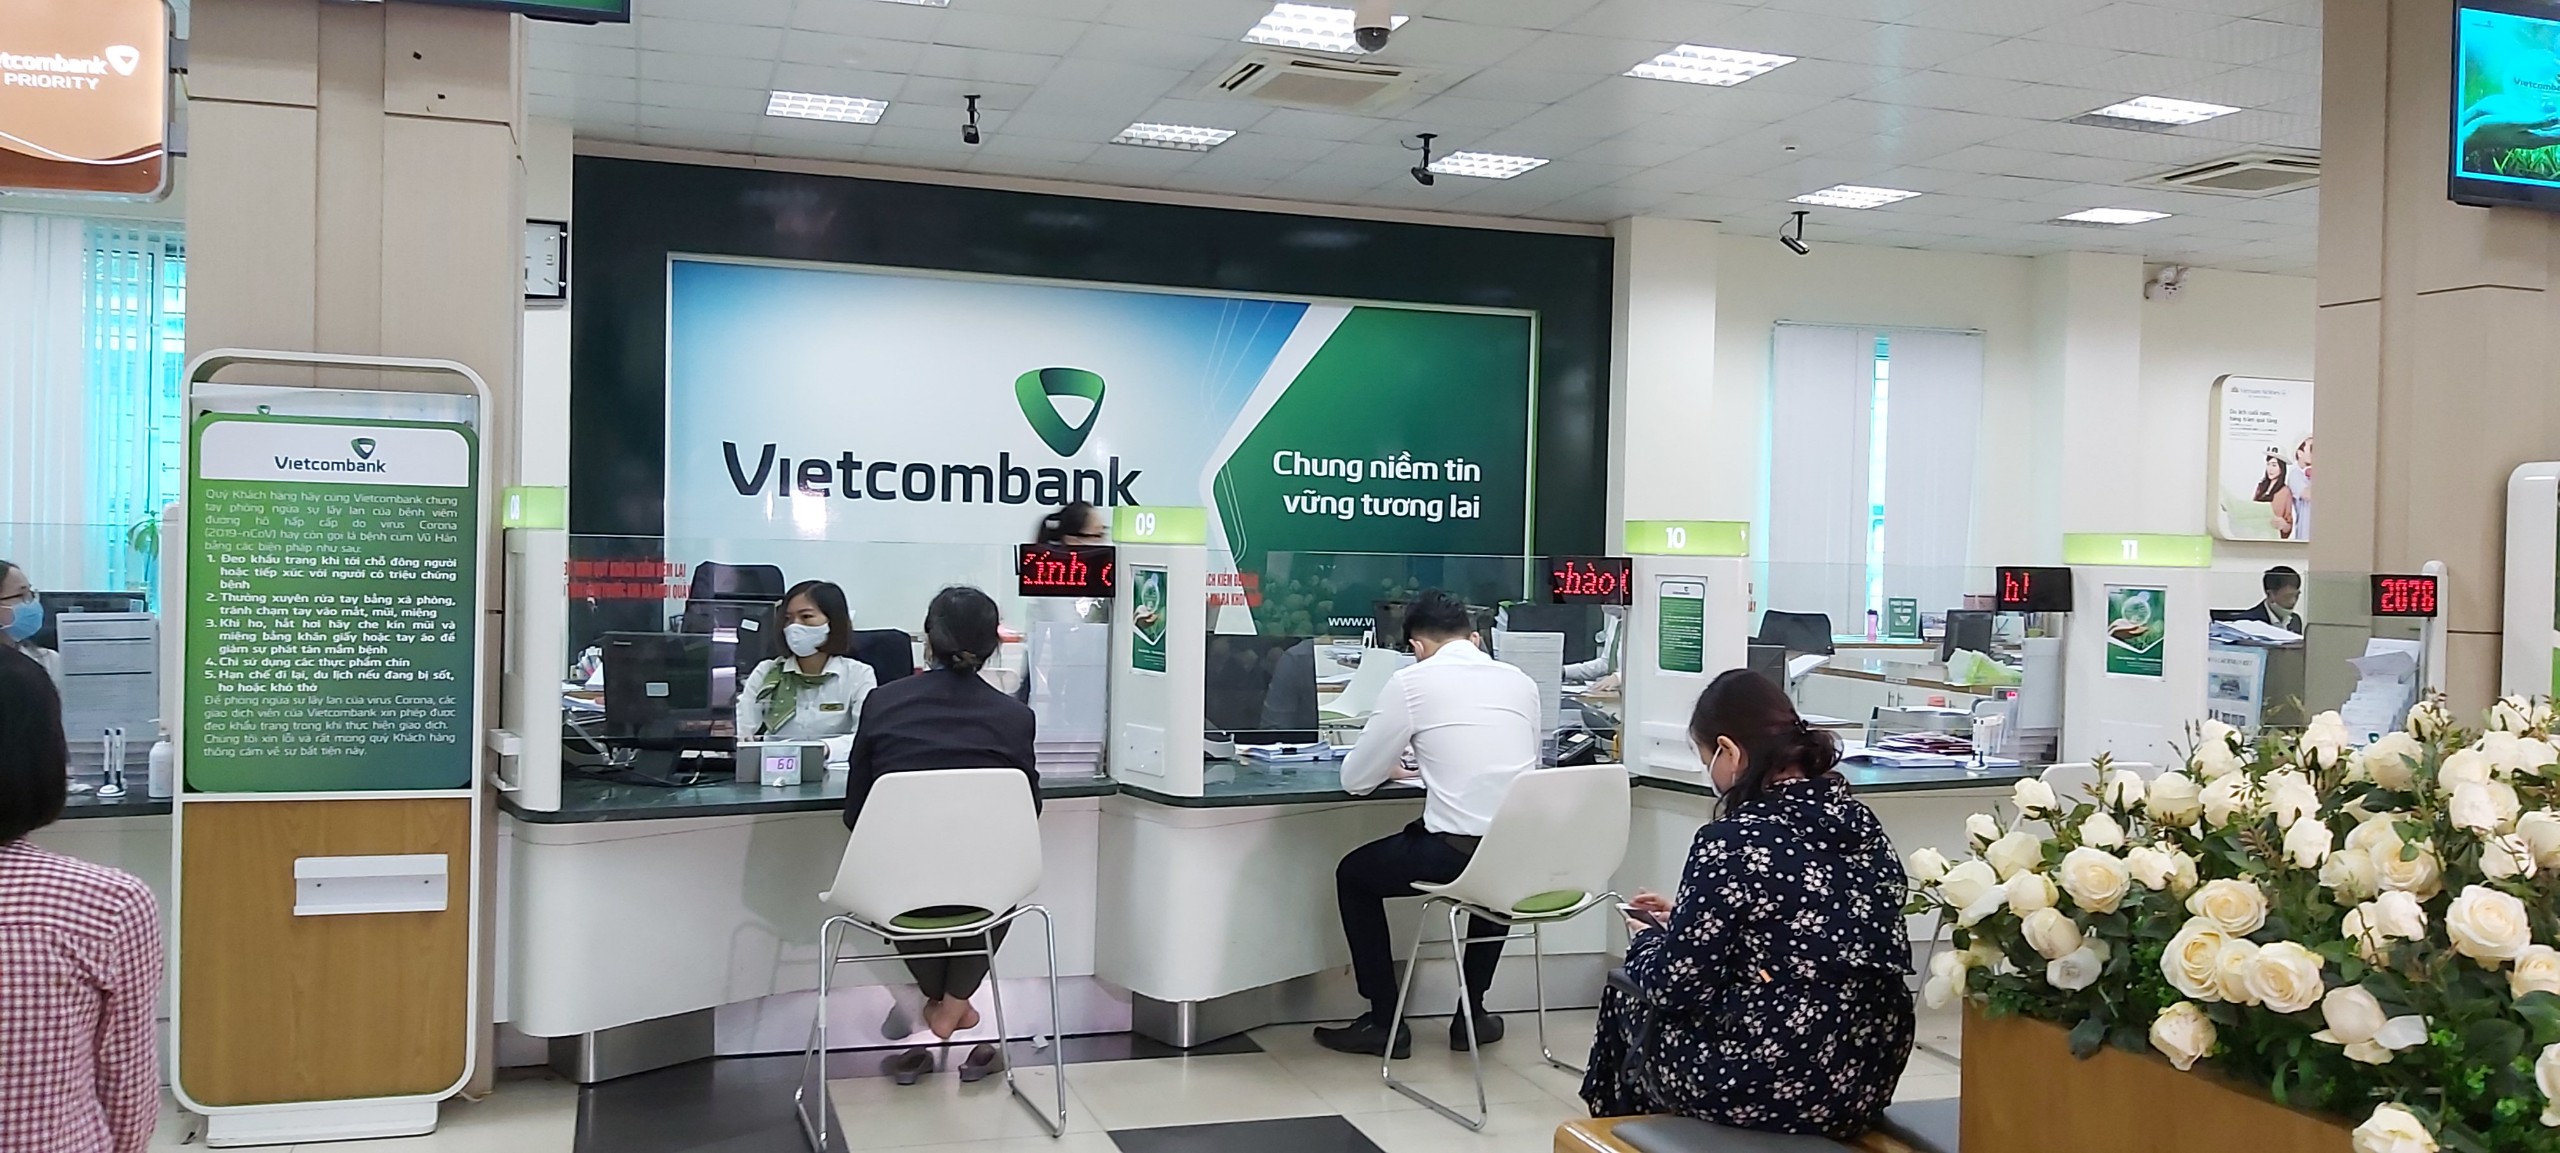 Vietcombank Quảng Ninh là một trong những ngân hàng thực hiện rất hiệu quả Thông tư 01.